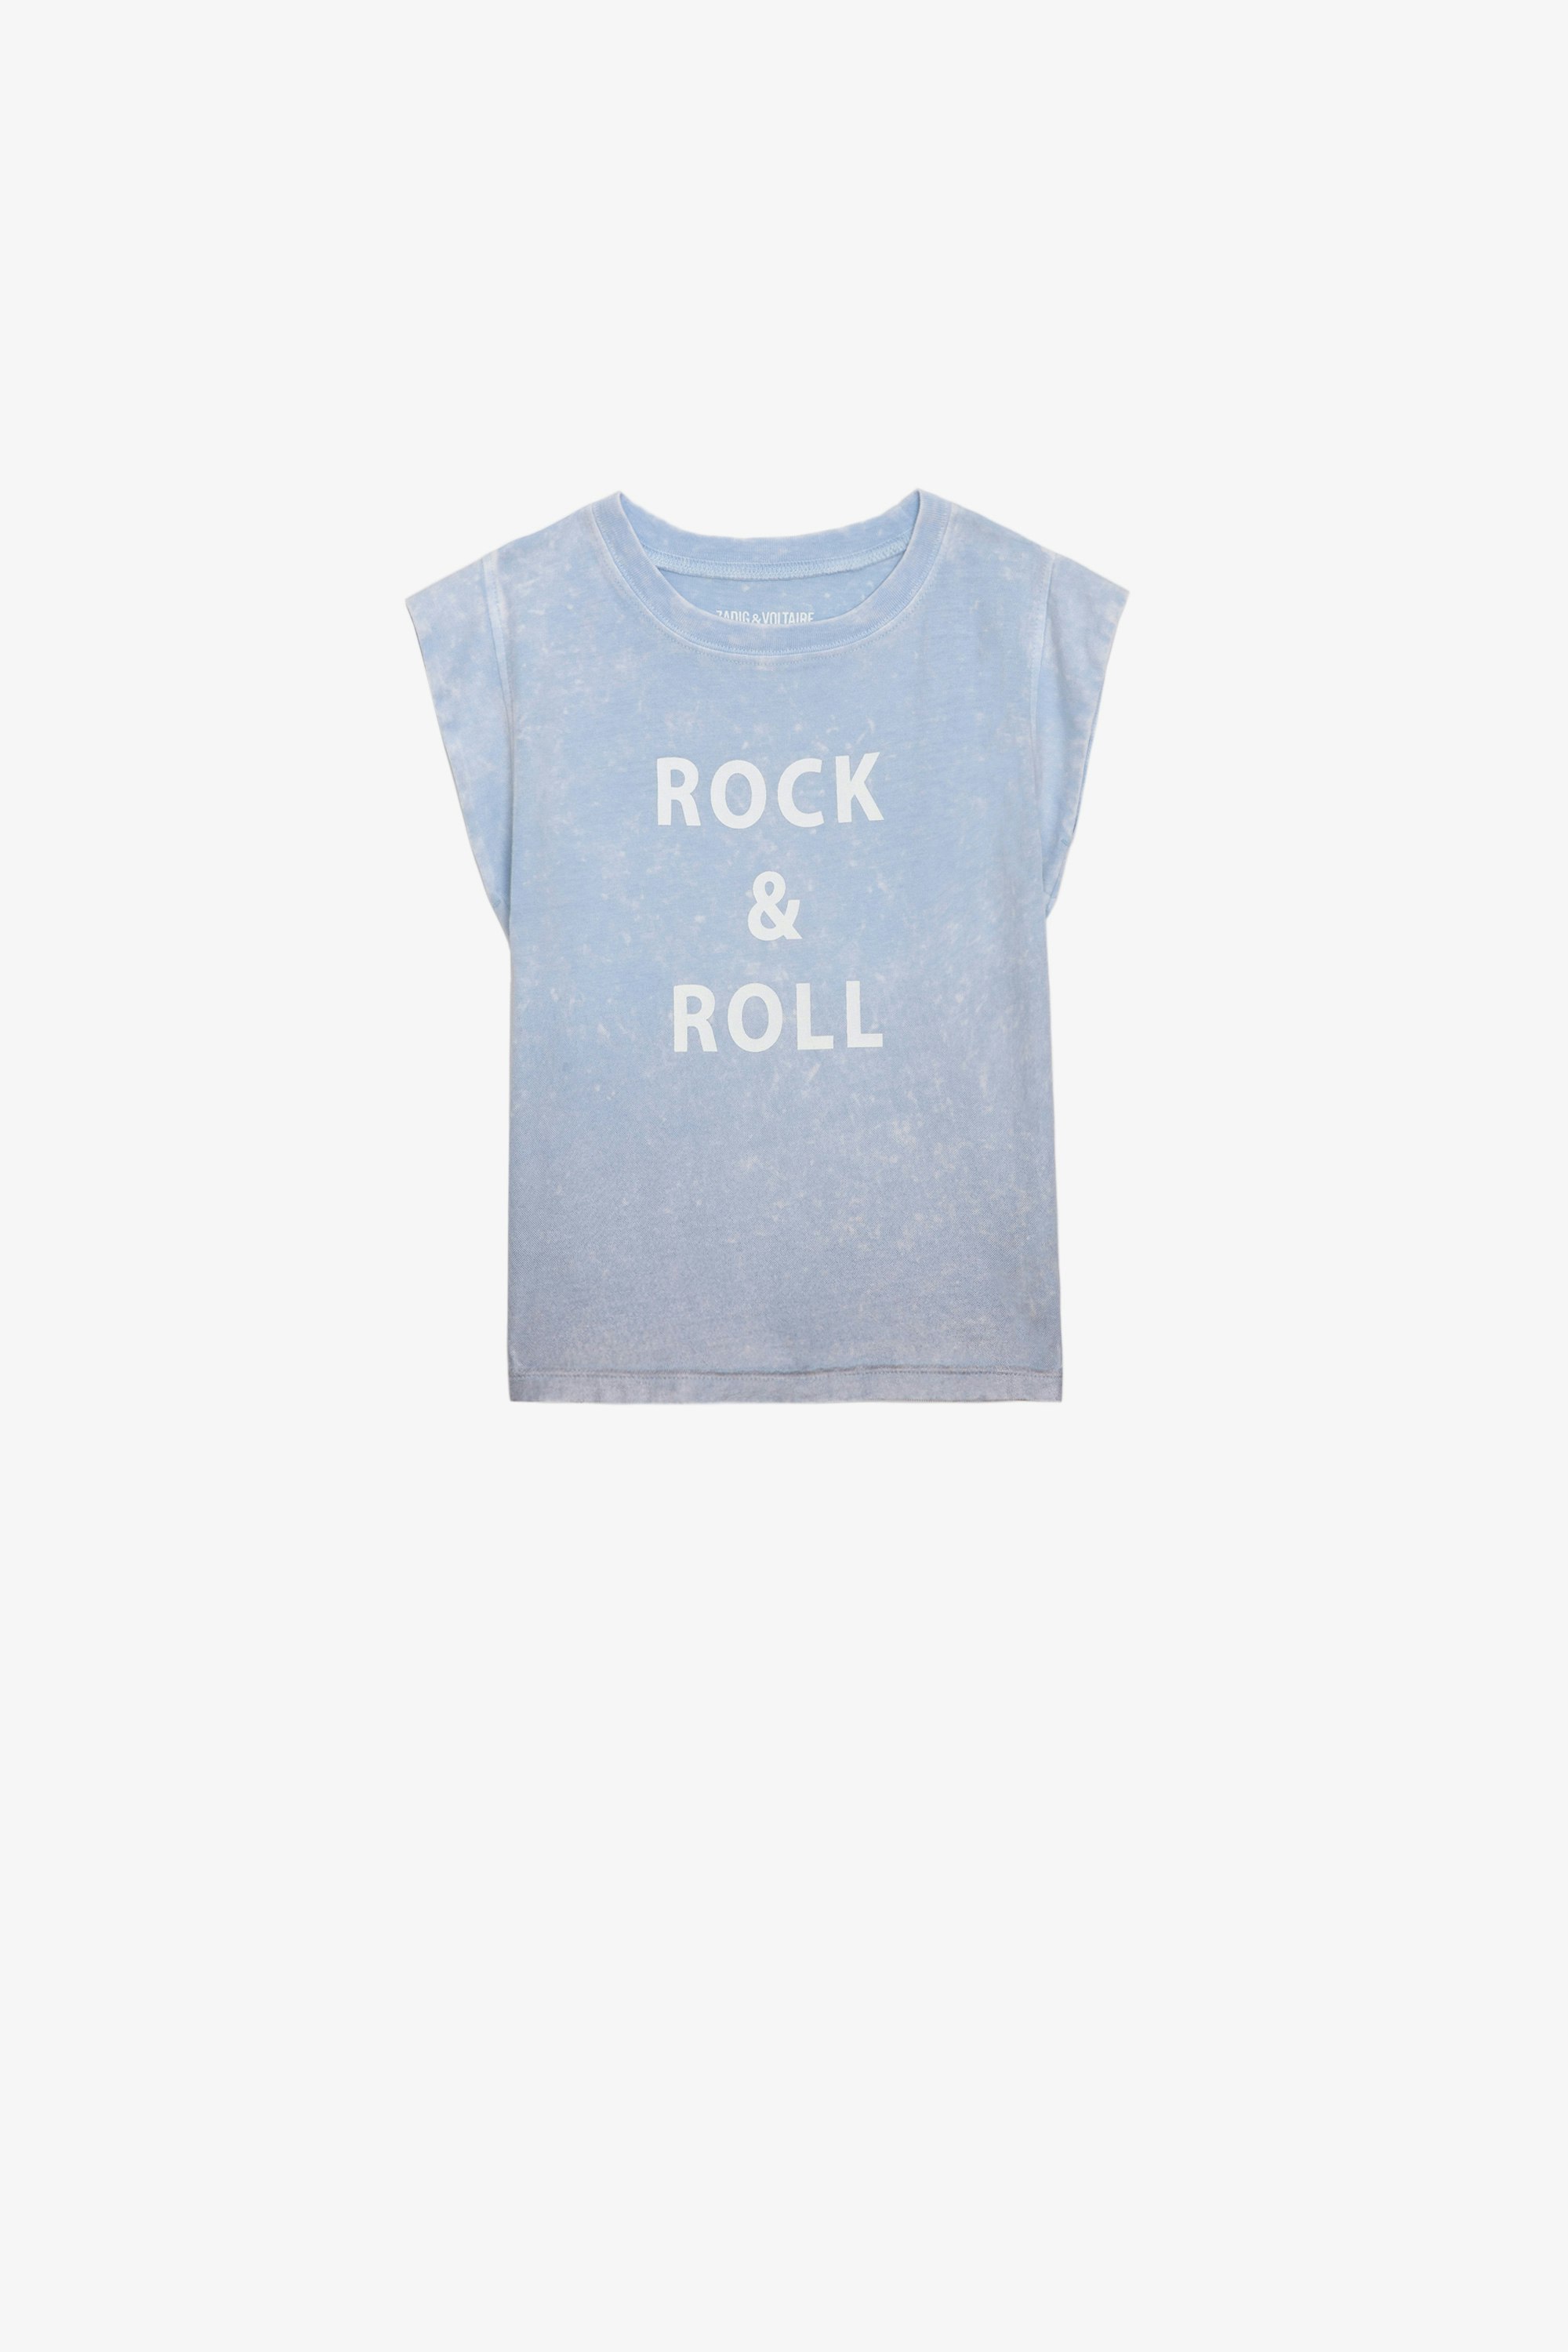 T-shirt Alin Fille - T-shirt fille à manches courtes orné d'un message "Rock & Roll".